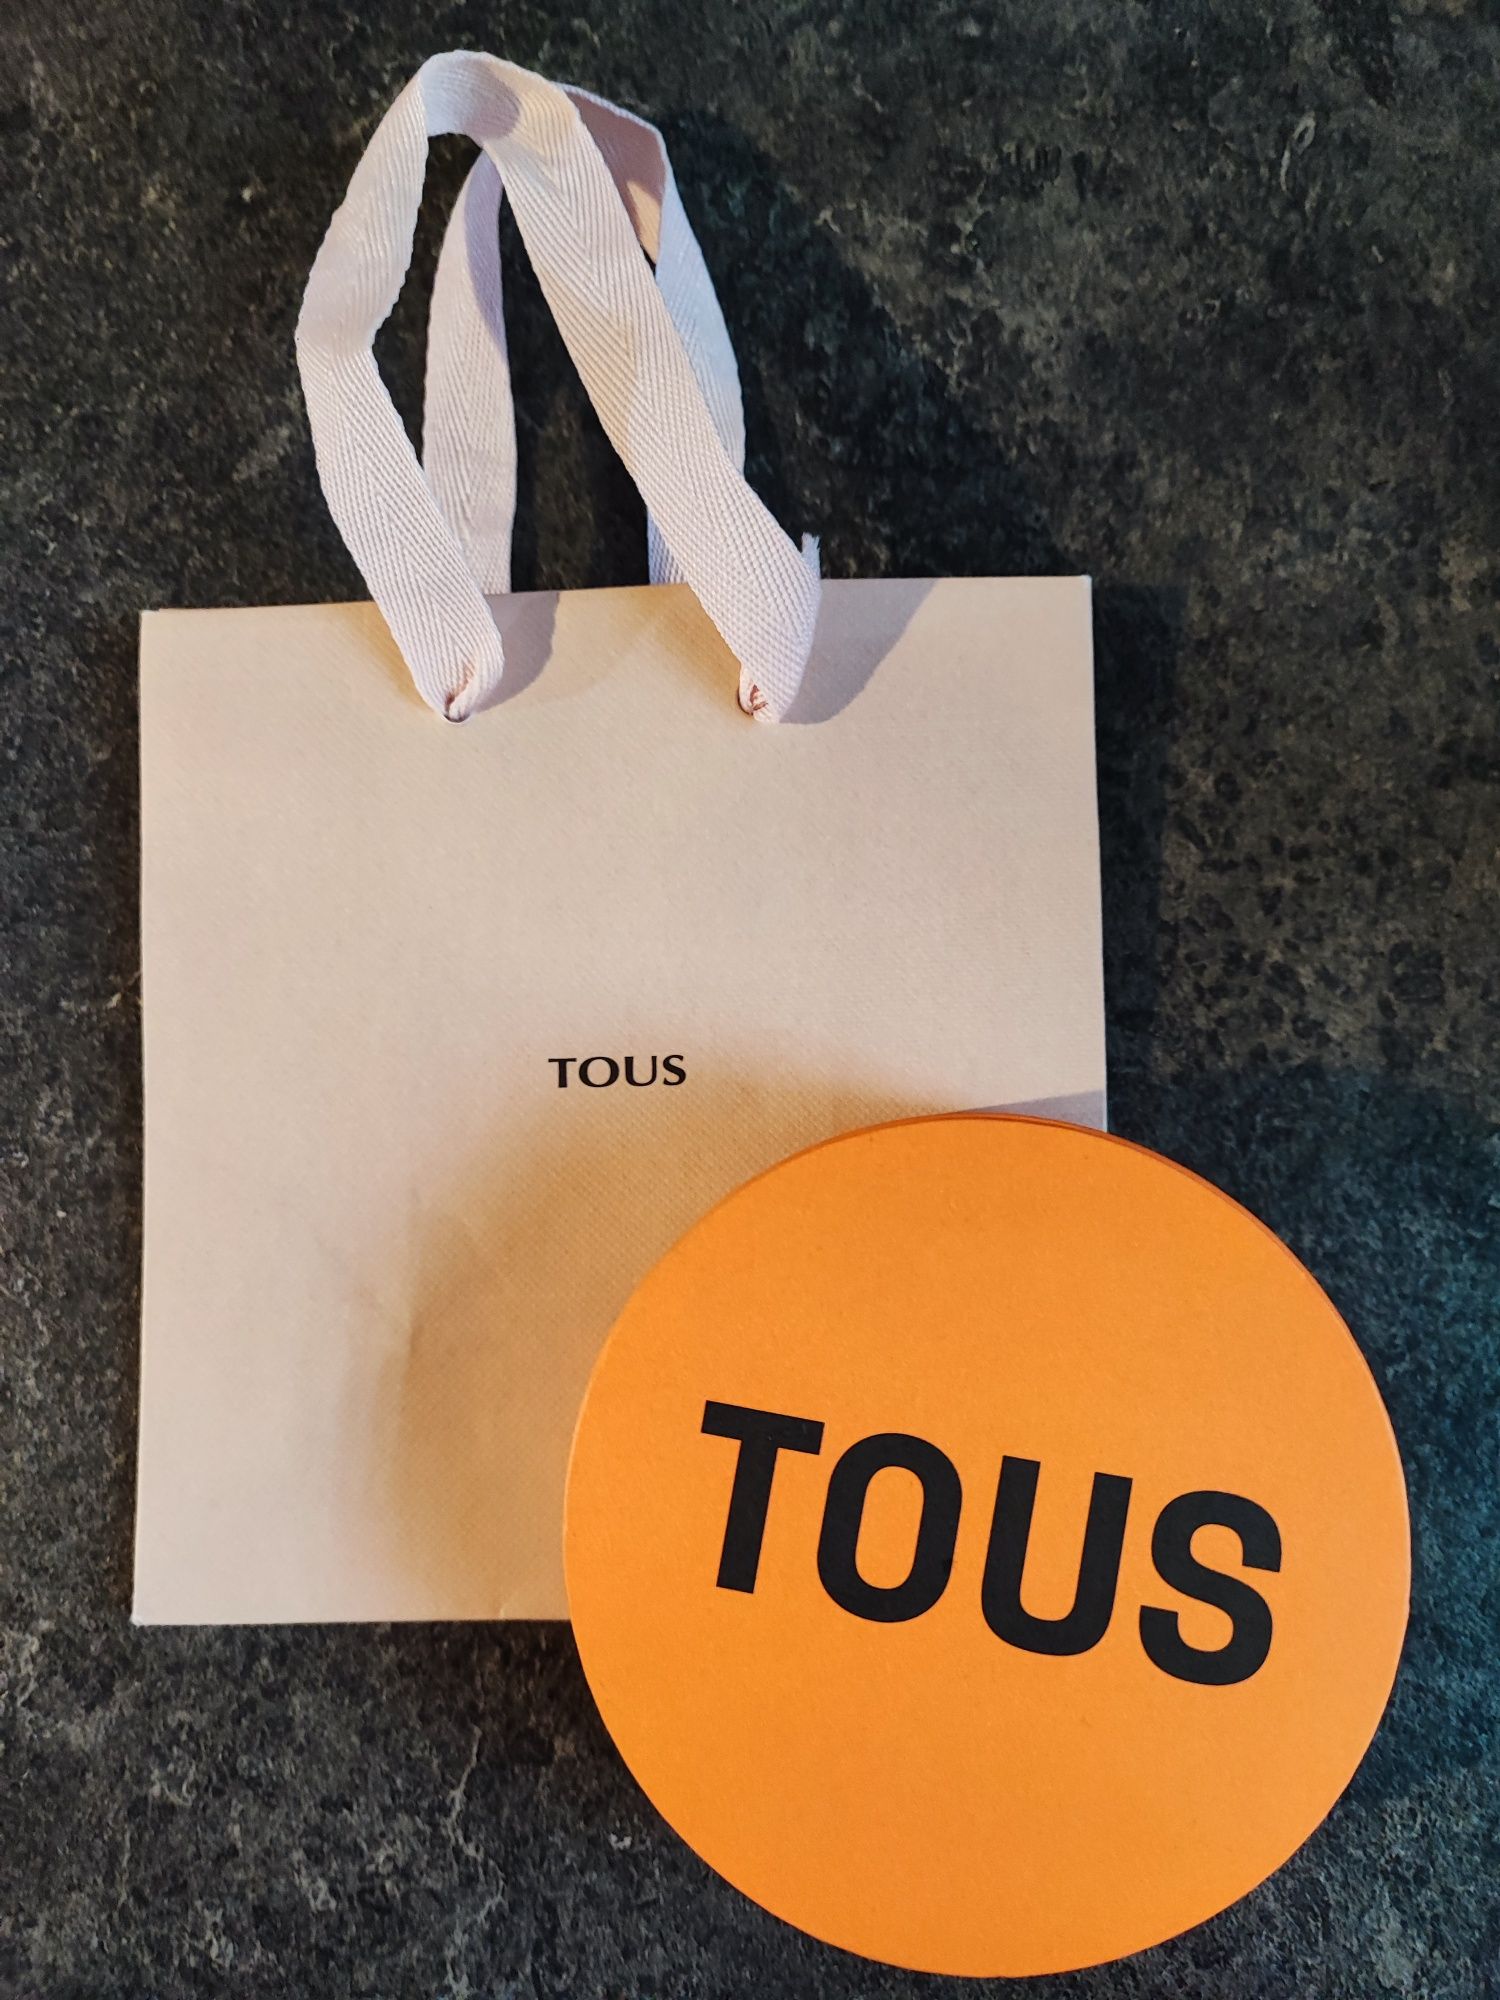 Pudełko na biżuterię i torebka prezentowa firmy Tous